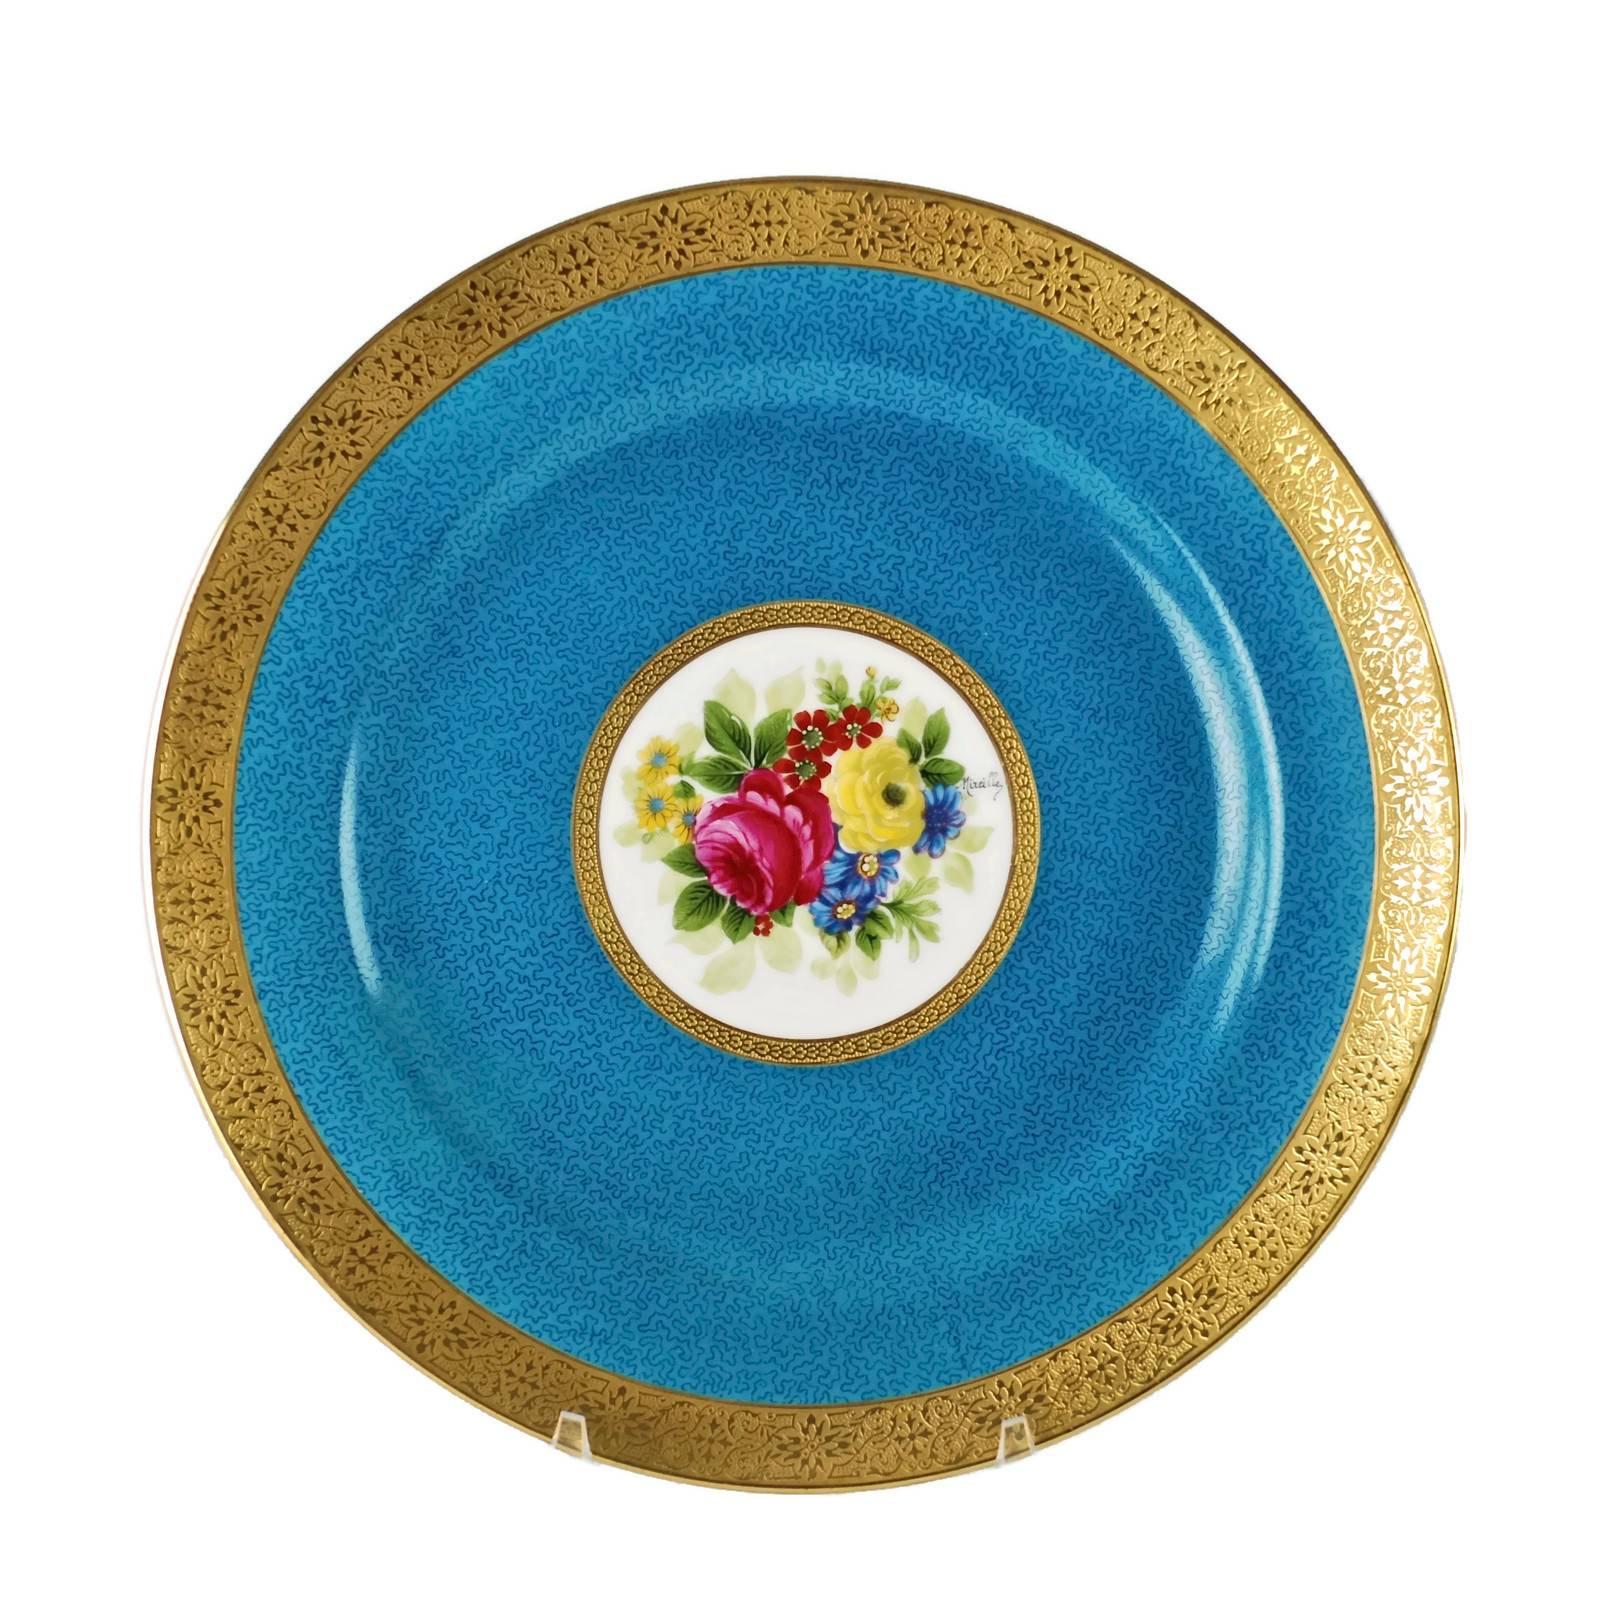 Este excepcional juego de platos de gabinete de porcelana de Limoges fue fabricado y decorado por la fábrica y el estudio de porcelana Charles Ahrenfeldt de Limoges (Francia). El centro de cada plato presenta una agrupación floral policromada